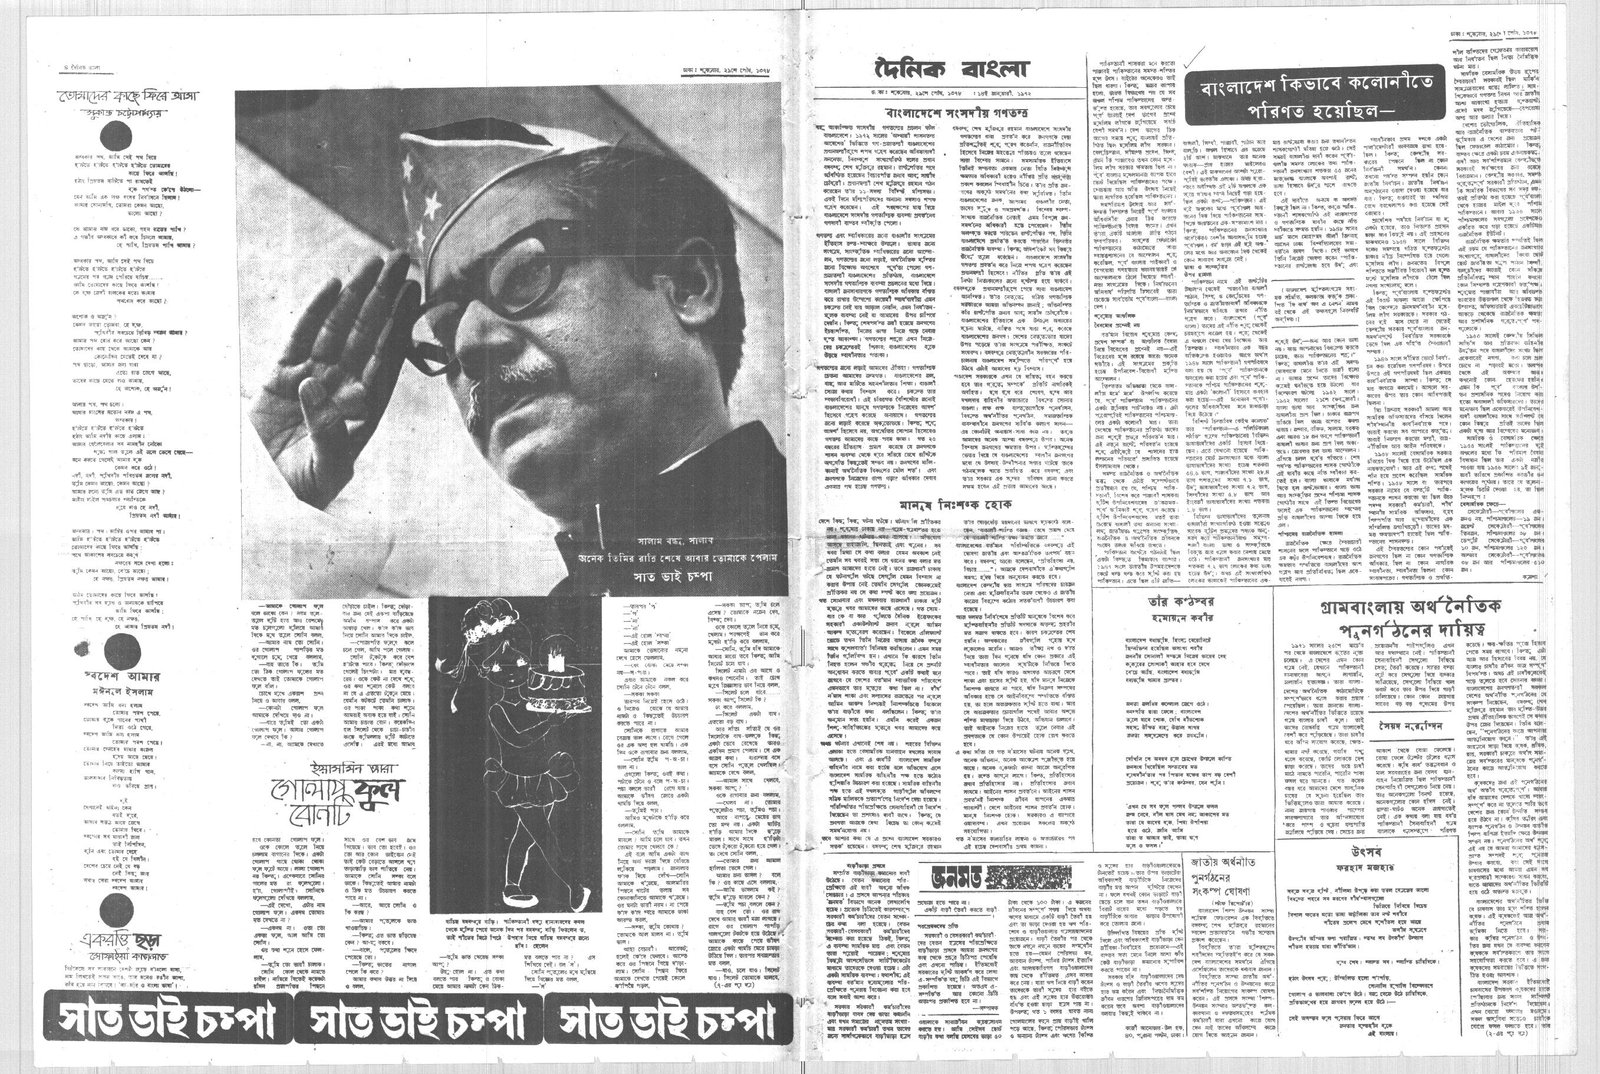 14JAN1972-DAINIK BANGLA-Regular-Page 4 and 5